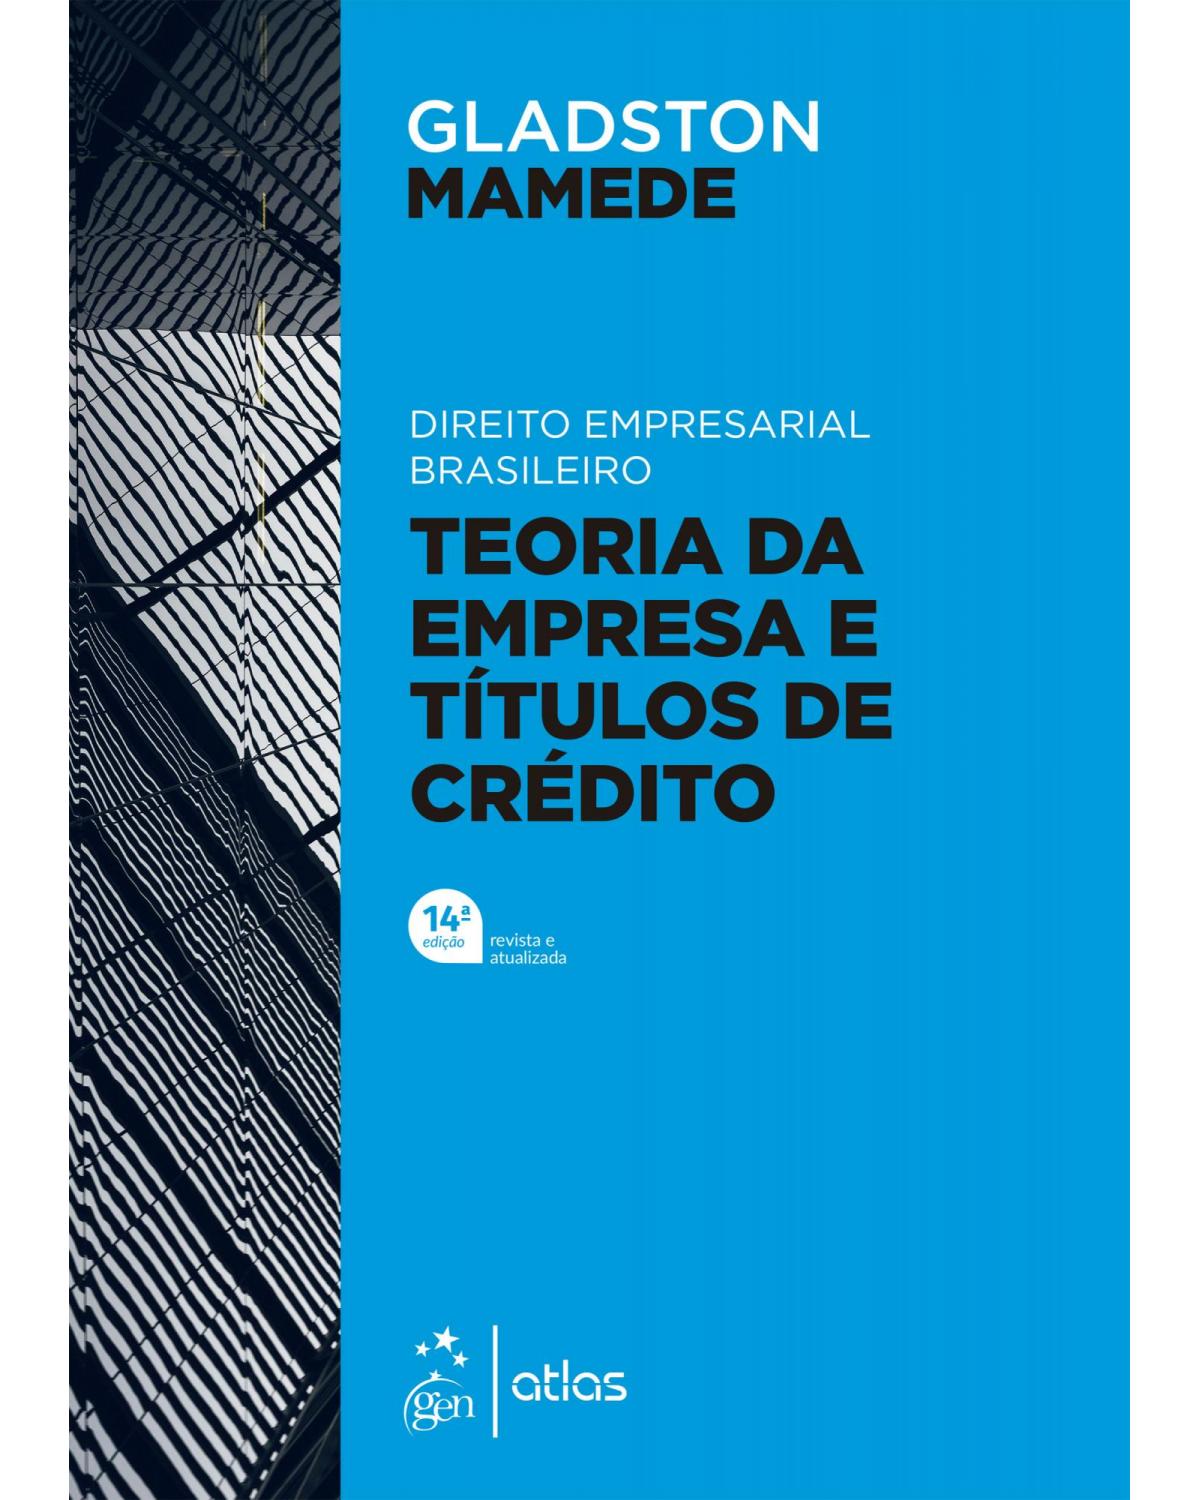 Direito empresarial brasileiro - Teoria geral da empresa e títulos de crédito - 14ª Edição | 2022